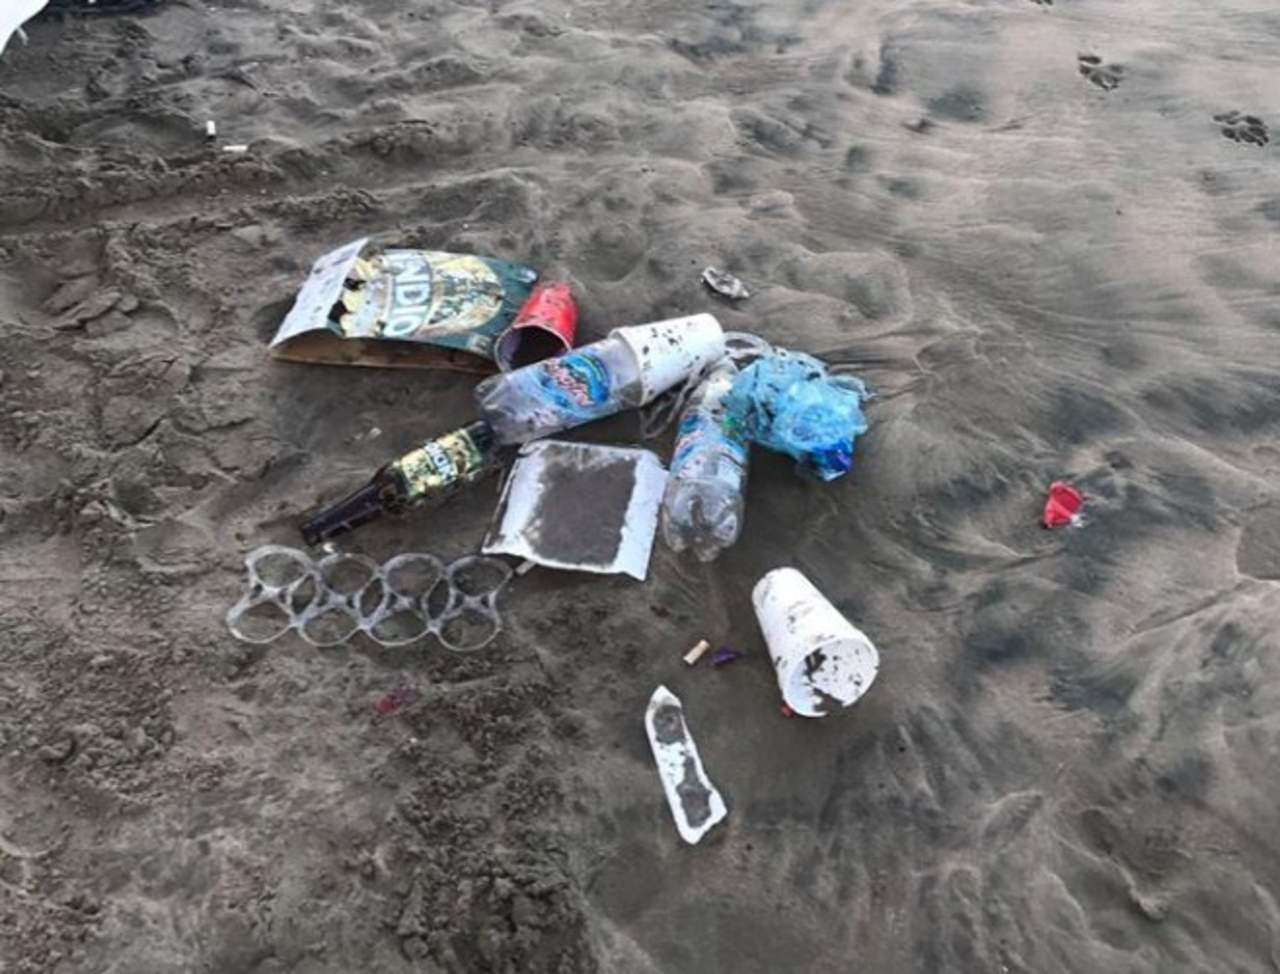 Exhiben basurero en la playa de Mazatlán hecho por supuestos estudiantes